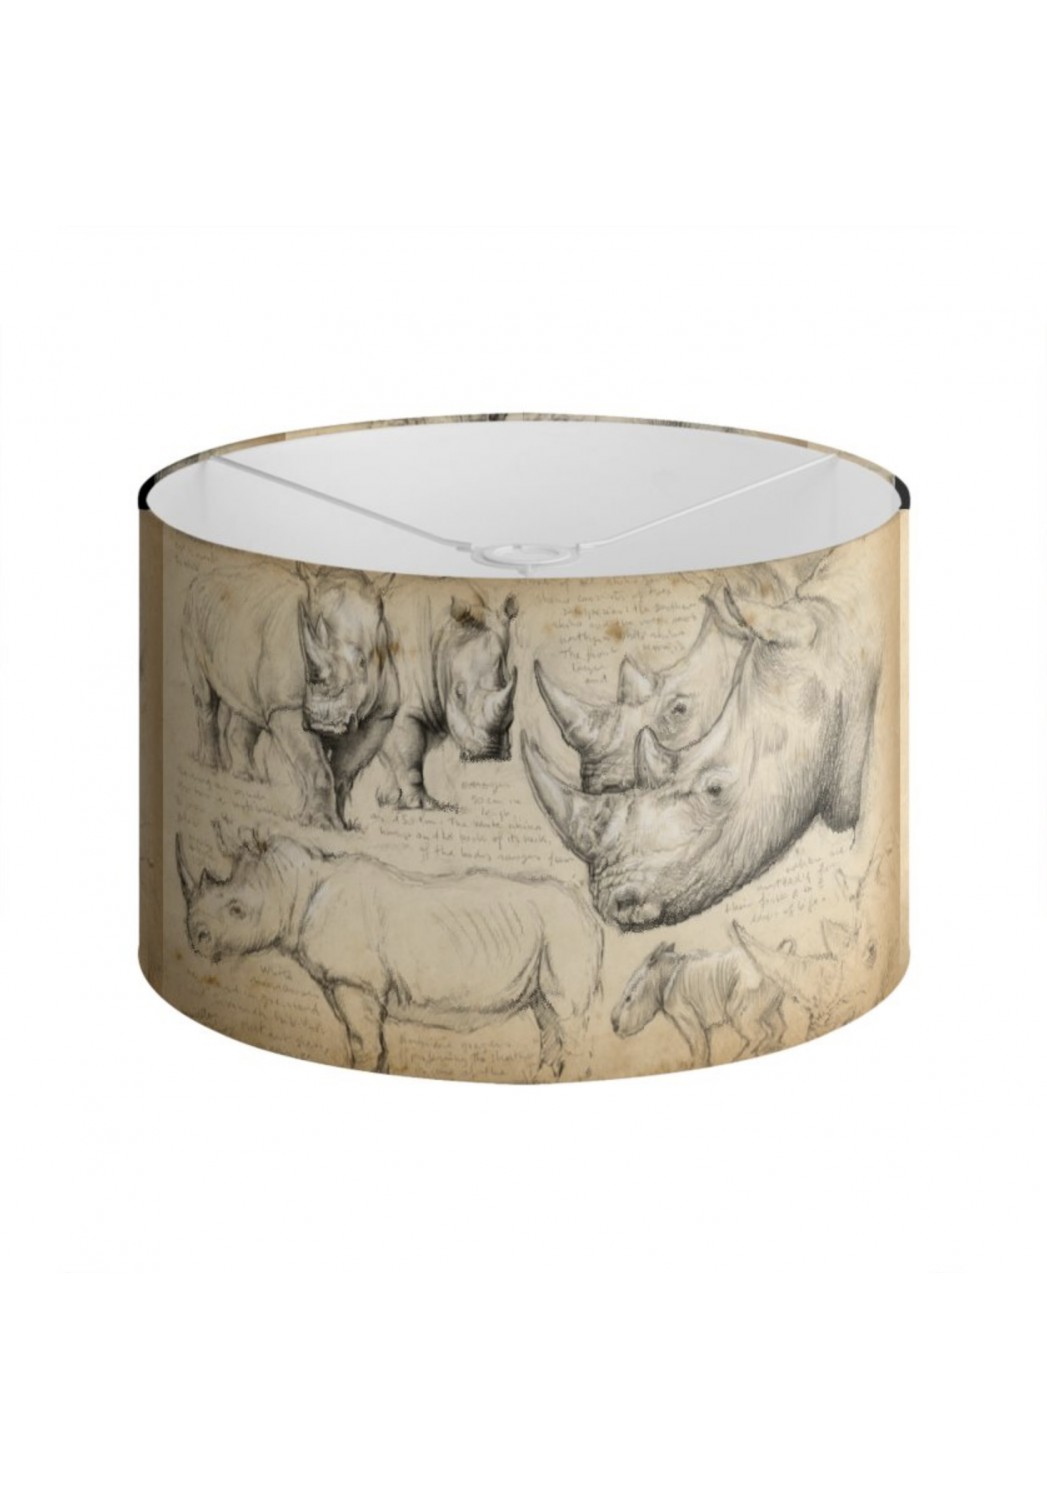 Marcello-art: Decoration accessoiries Lampshade 178 White rhino